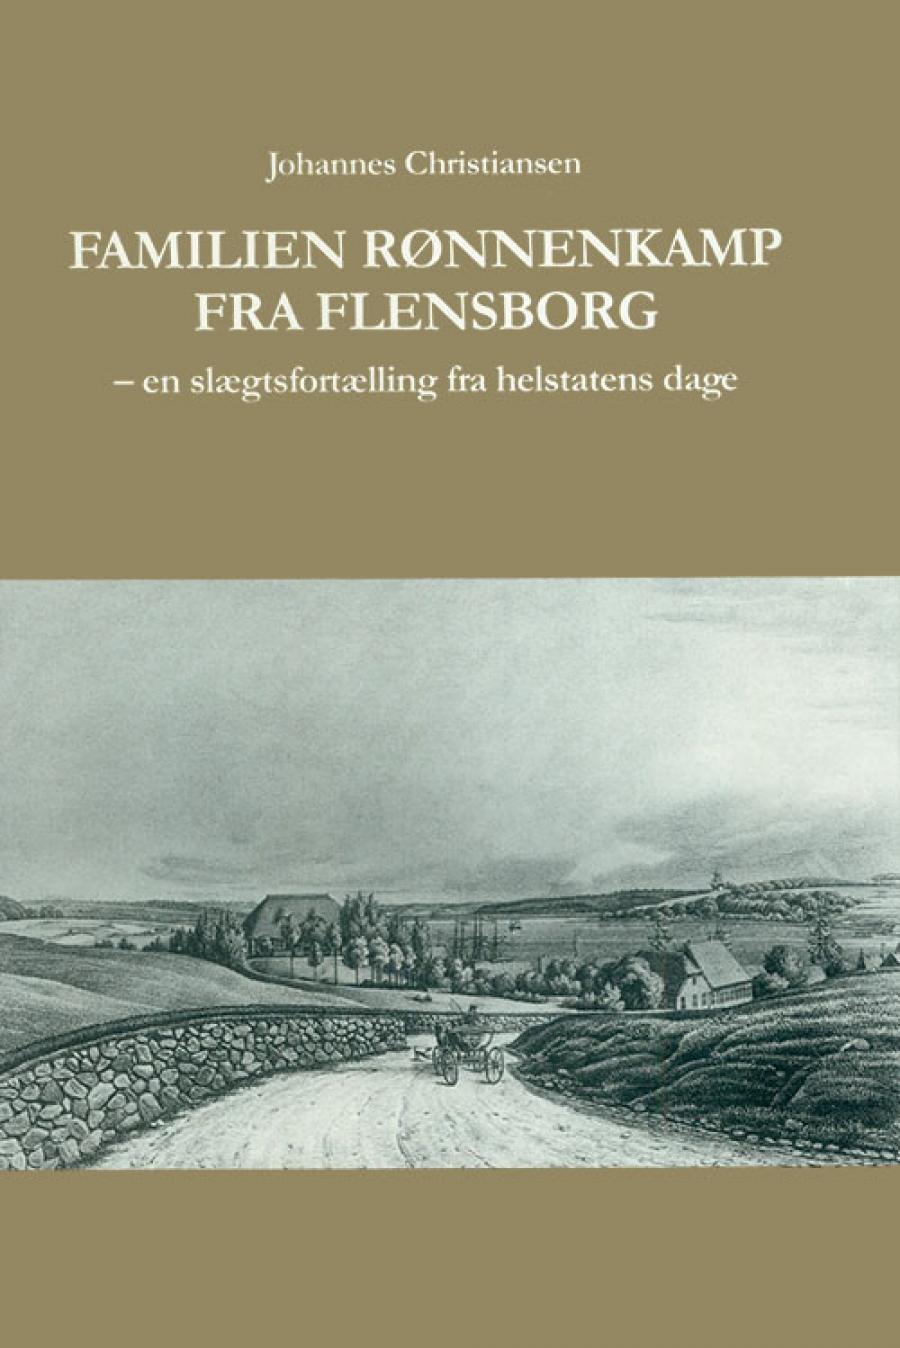 Johannes Christiansen: Familien Rønnenkamp fra Flensborg